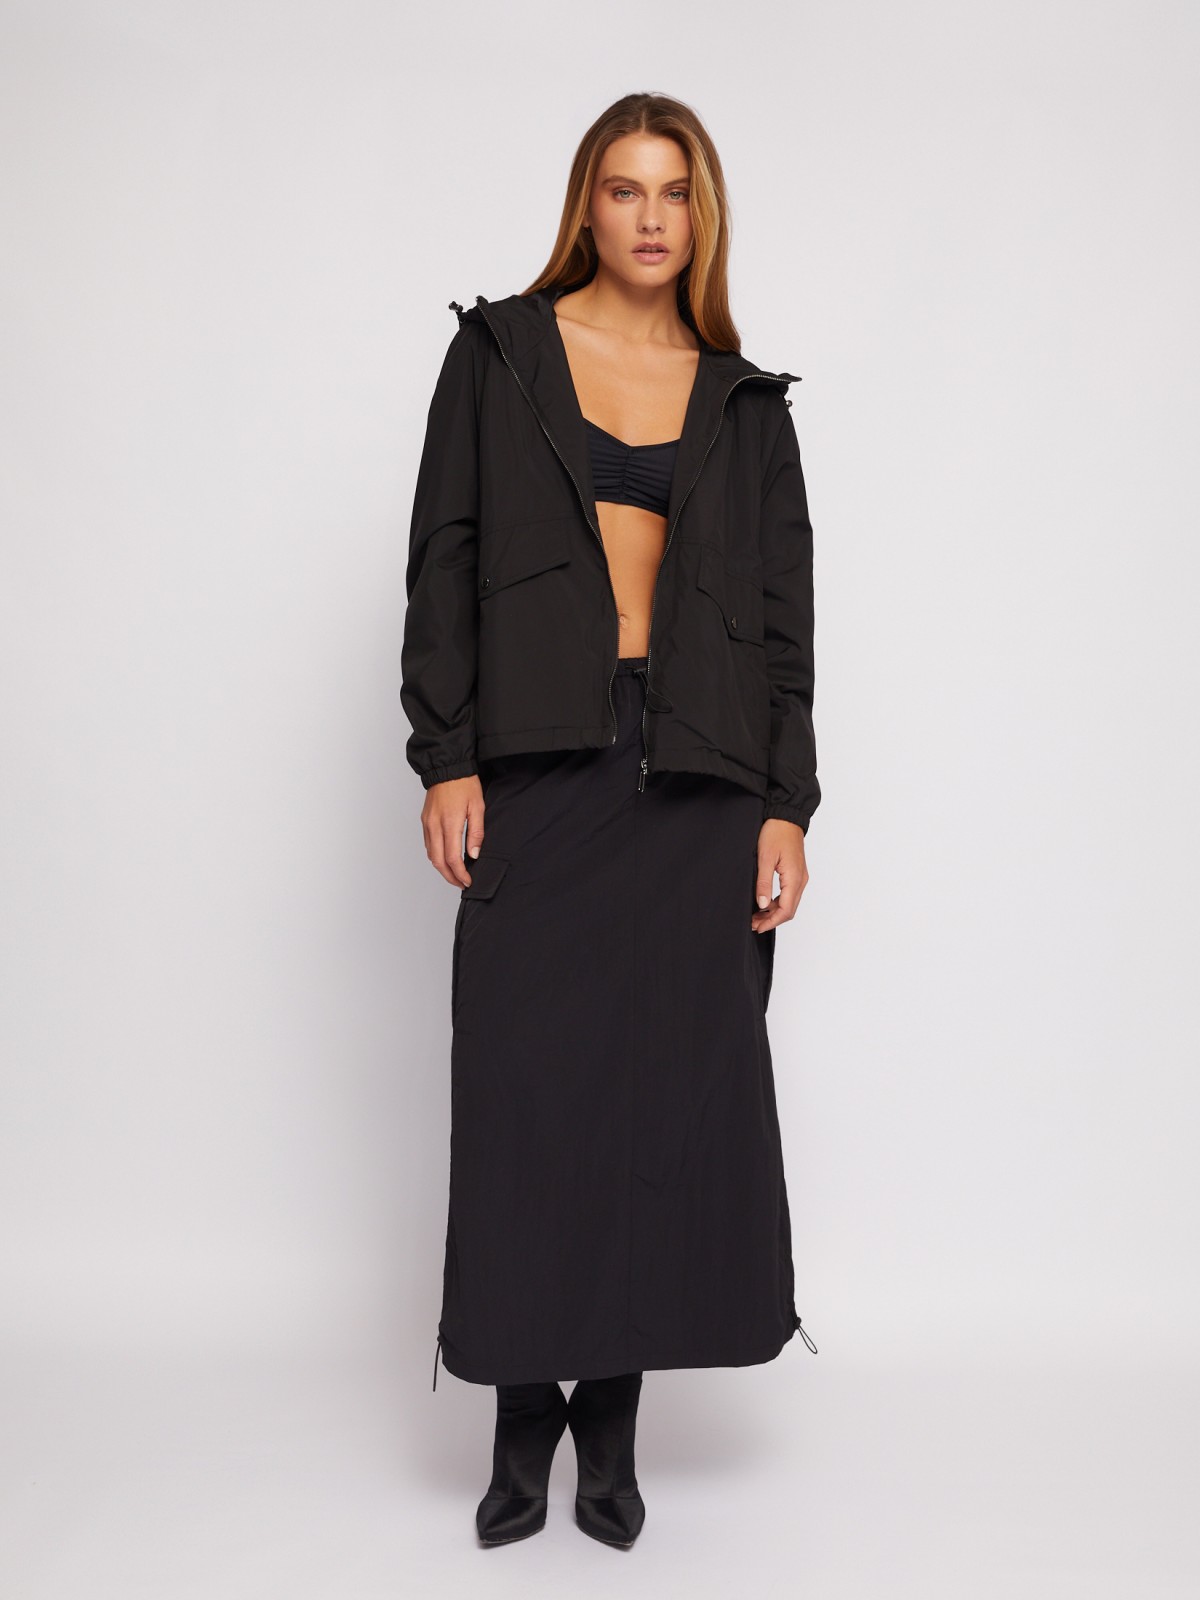 Куртка-ветровка с капюшоном в спортивном стиле zolla 024215612024, цвет черный, размер XS - фото 2